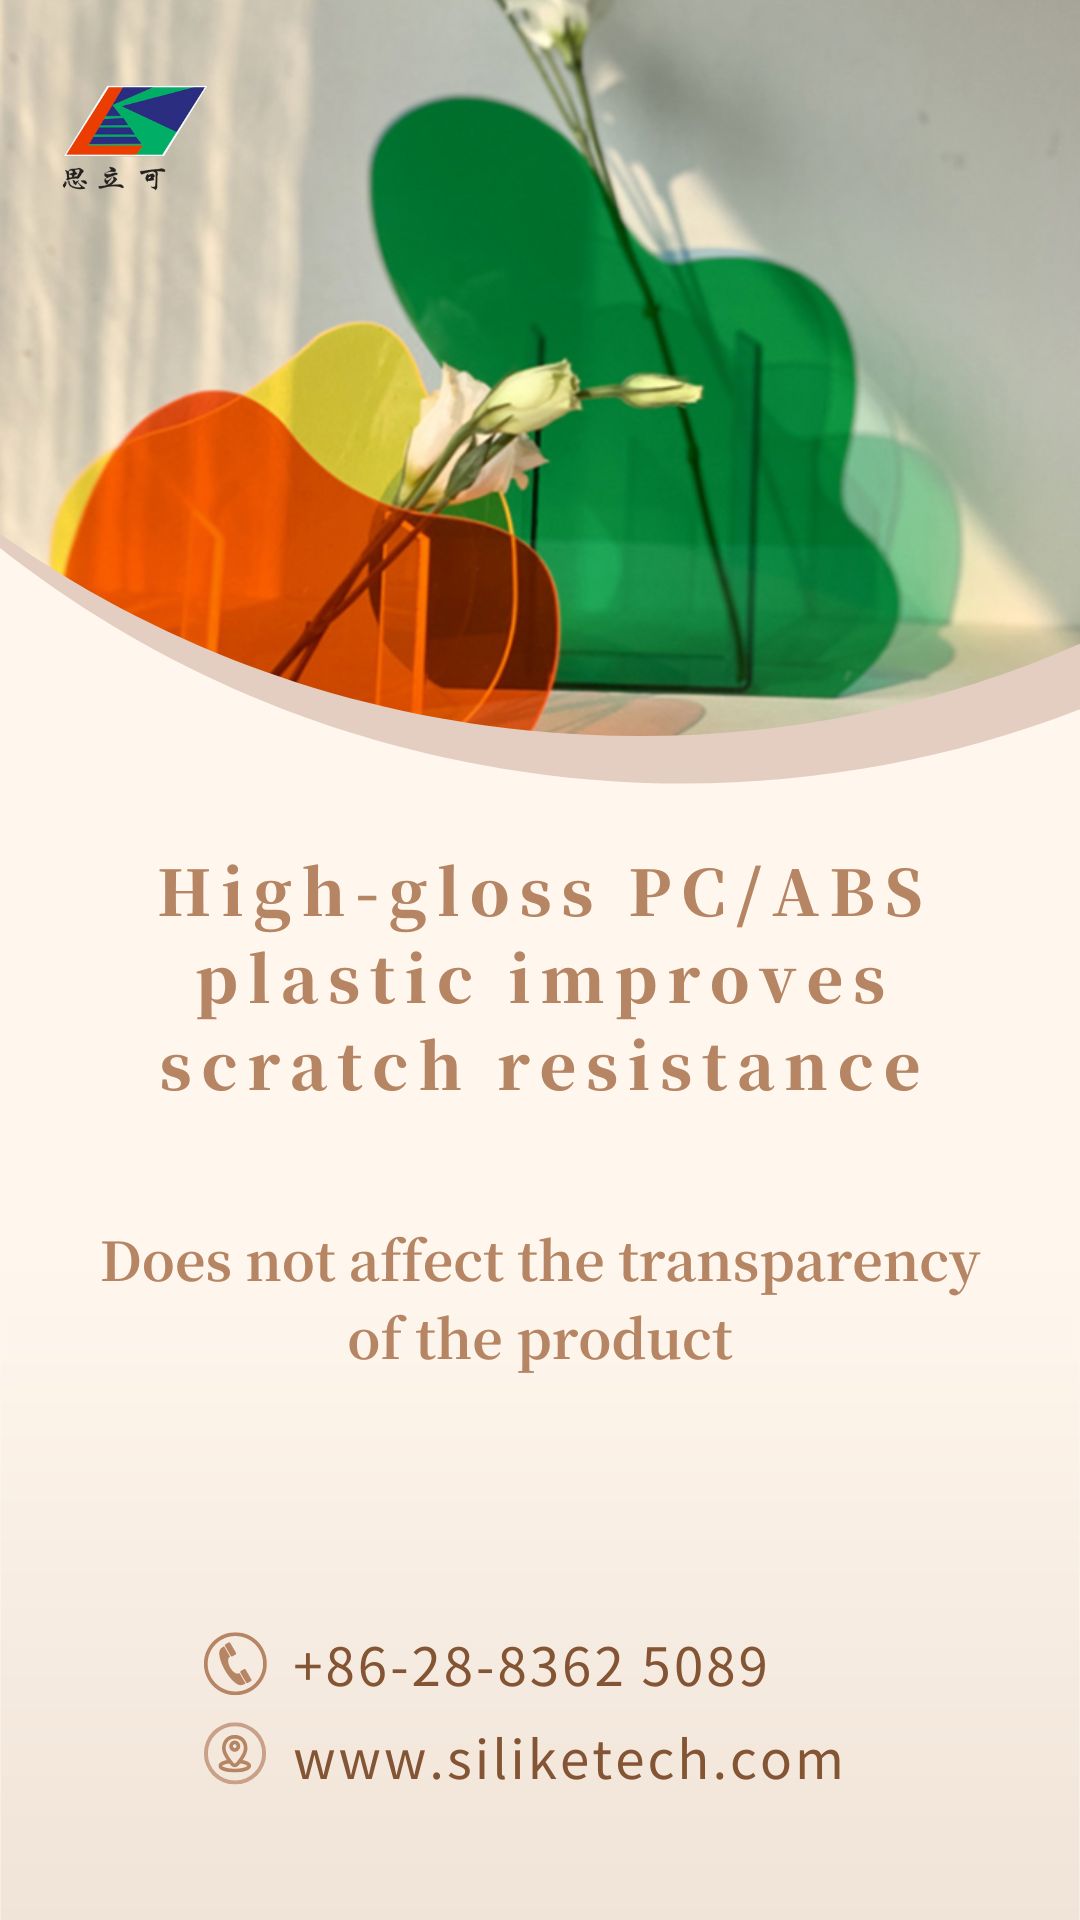 Solução de plástico PC/ABS de alto brilho para melhorar a resistência a arranhões